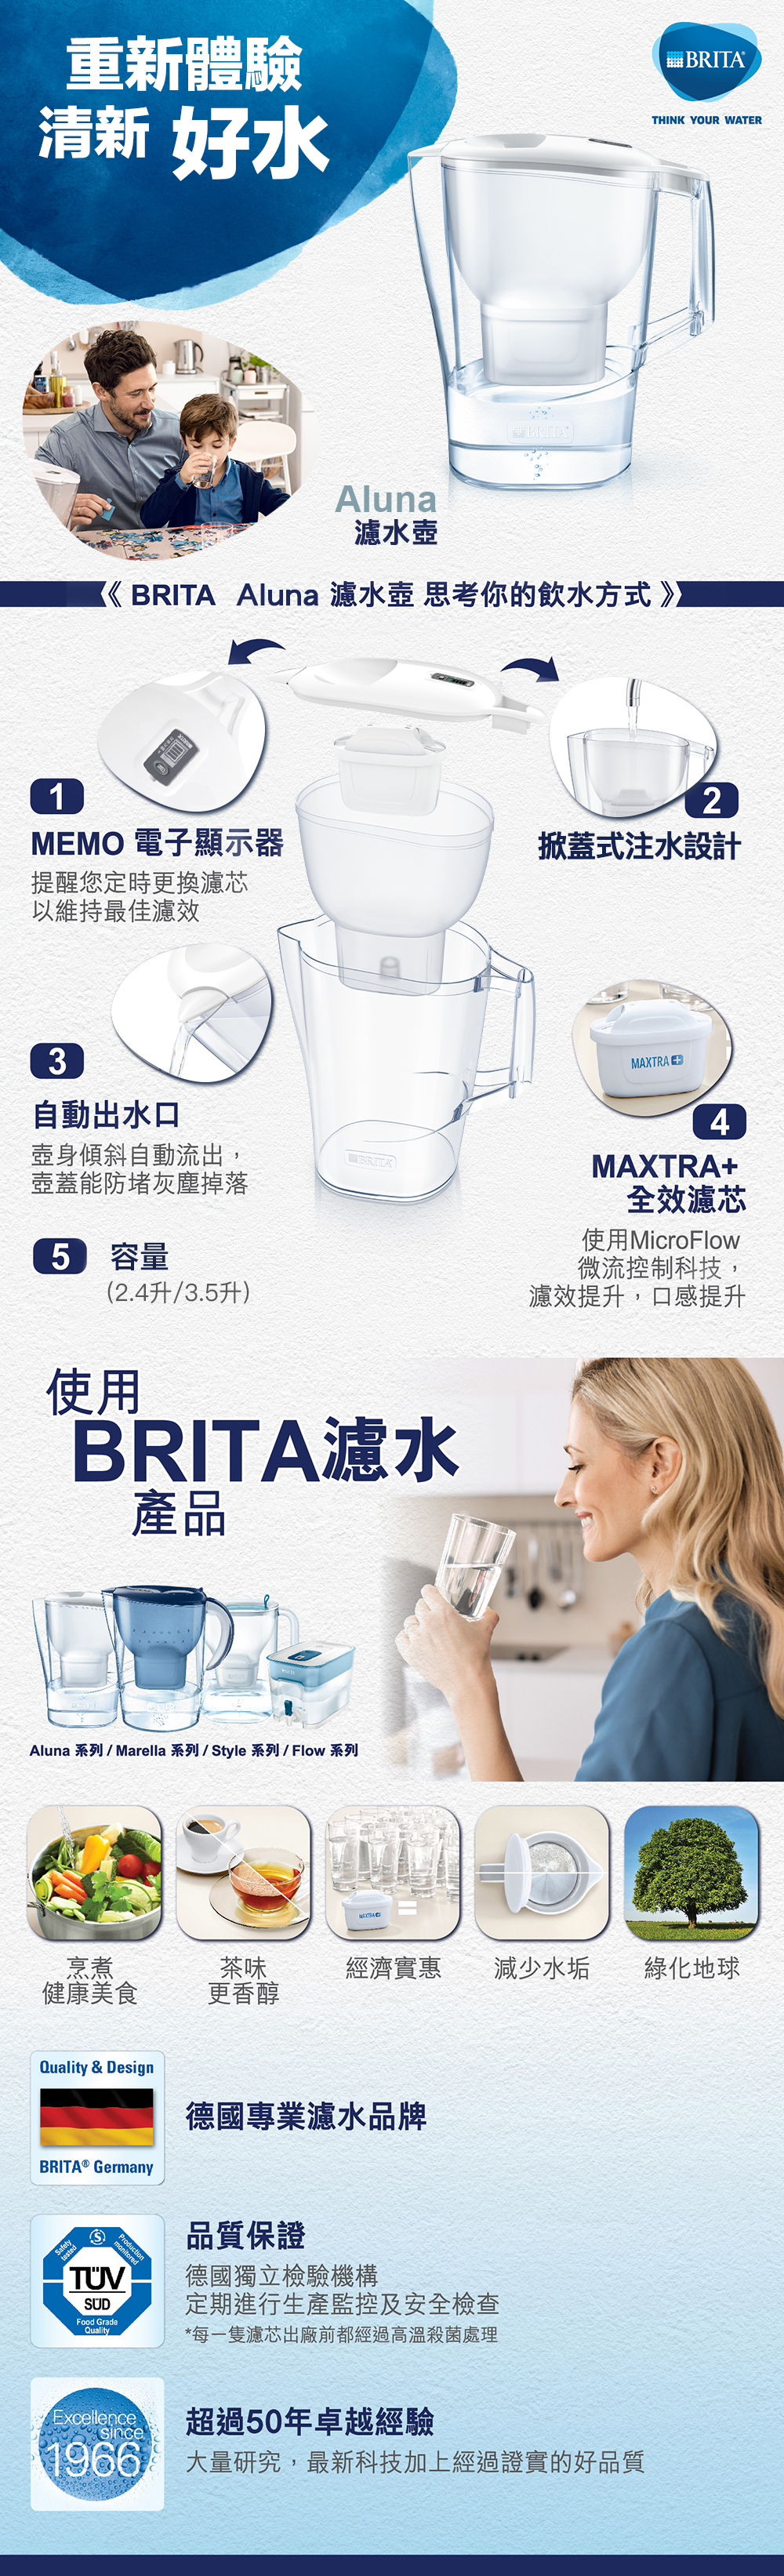 BRITA Aluna water filter jugs (3.5L/2.4L)